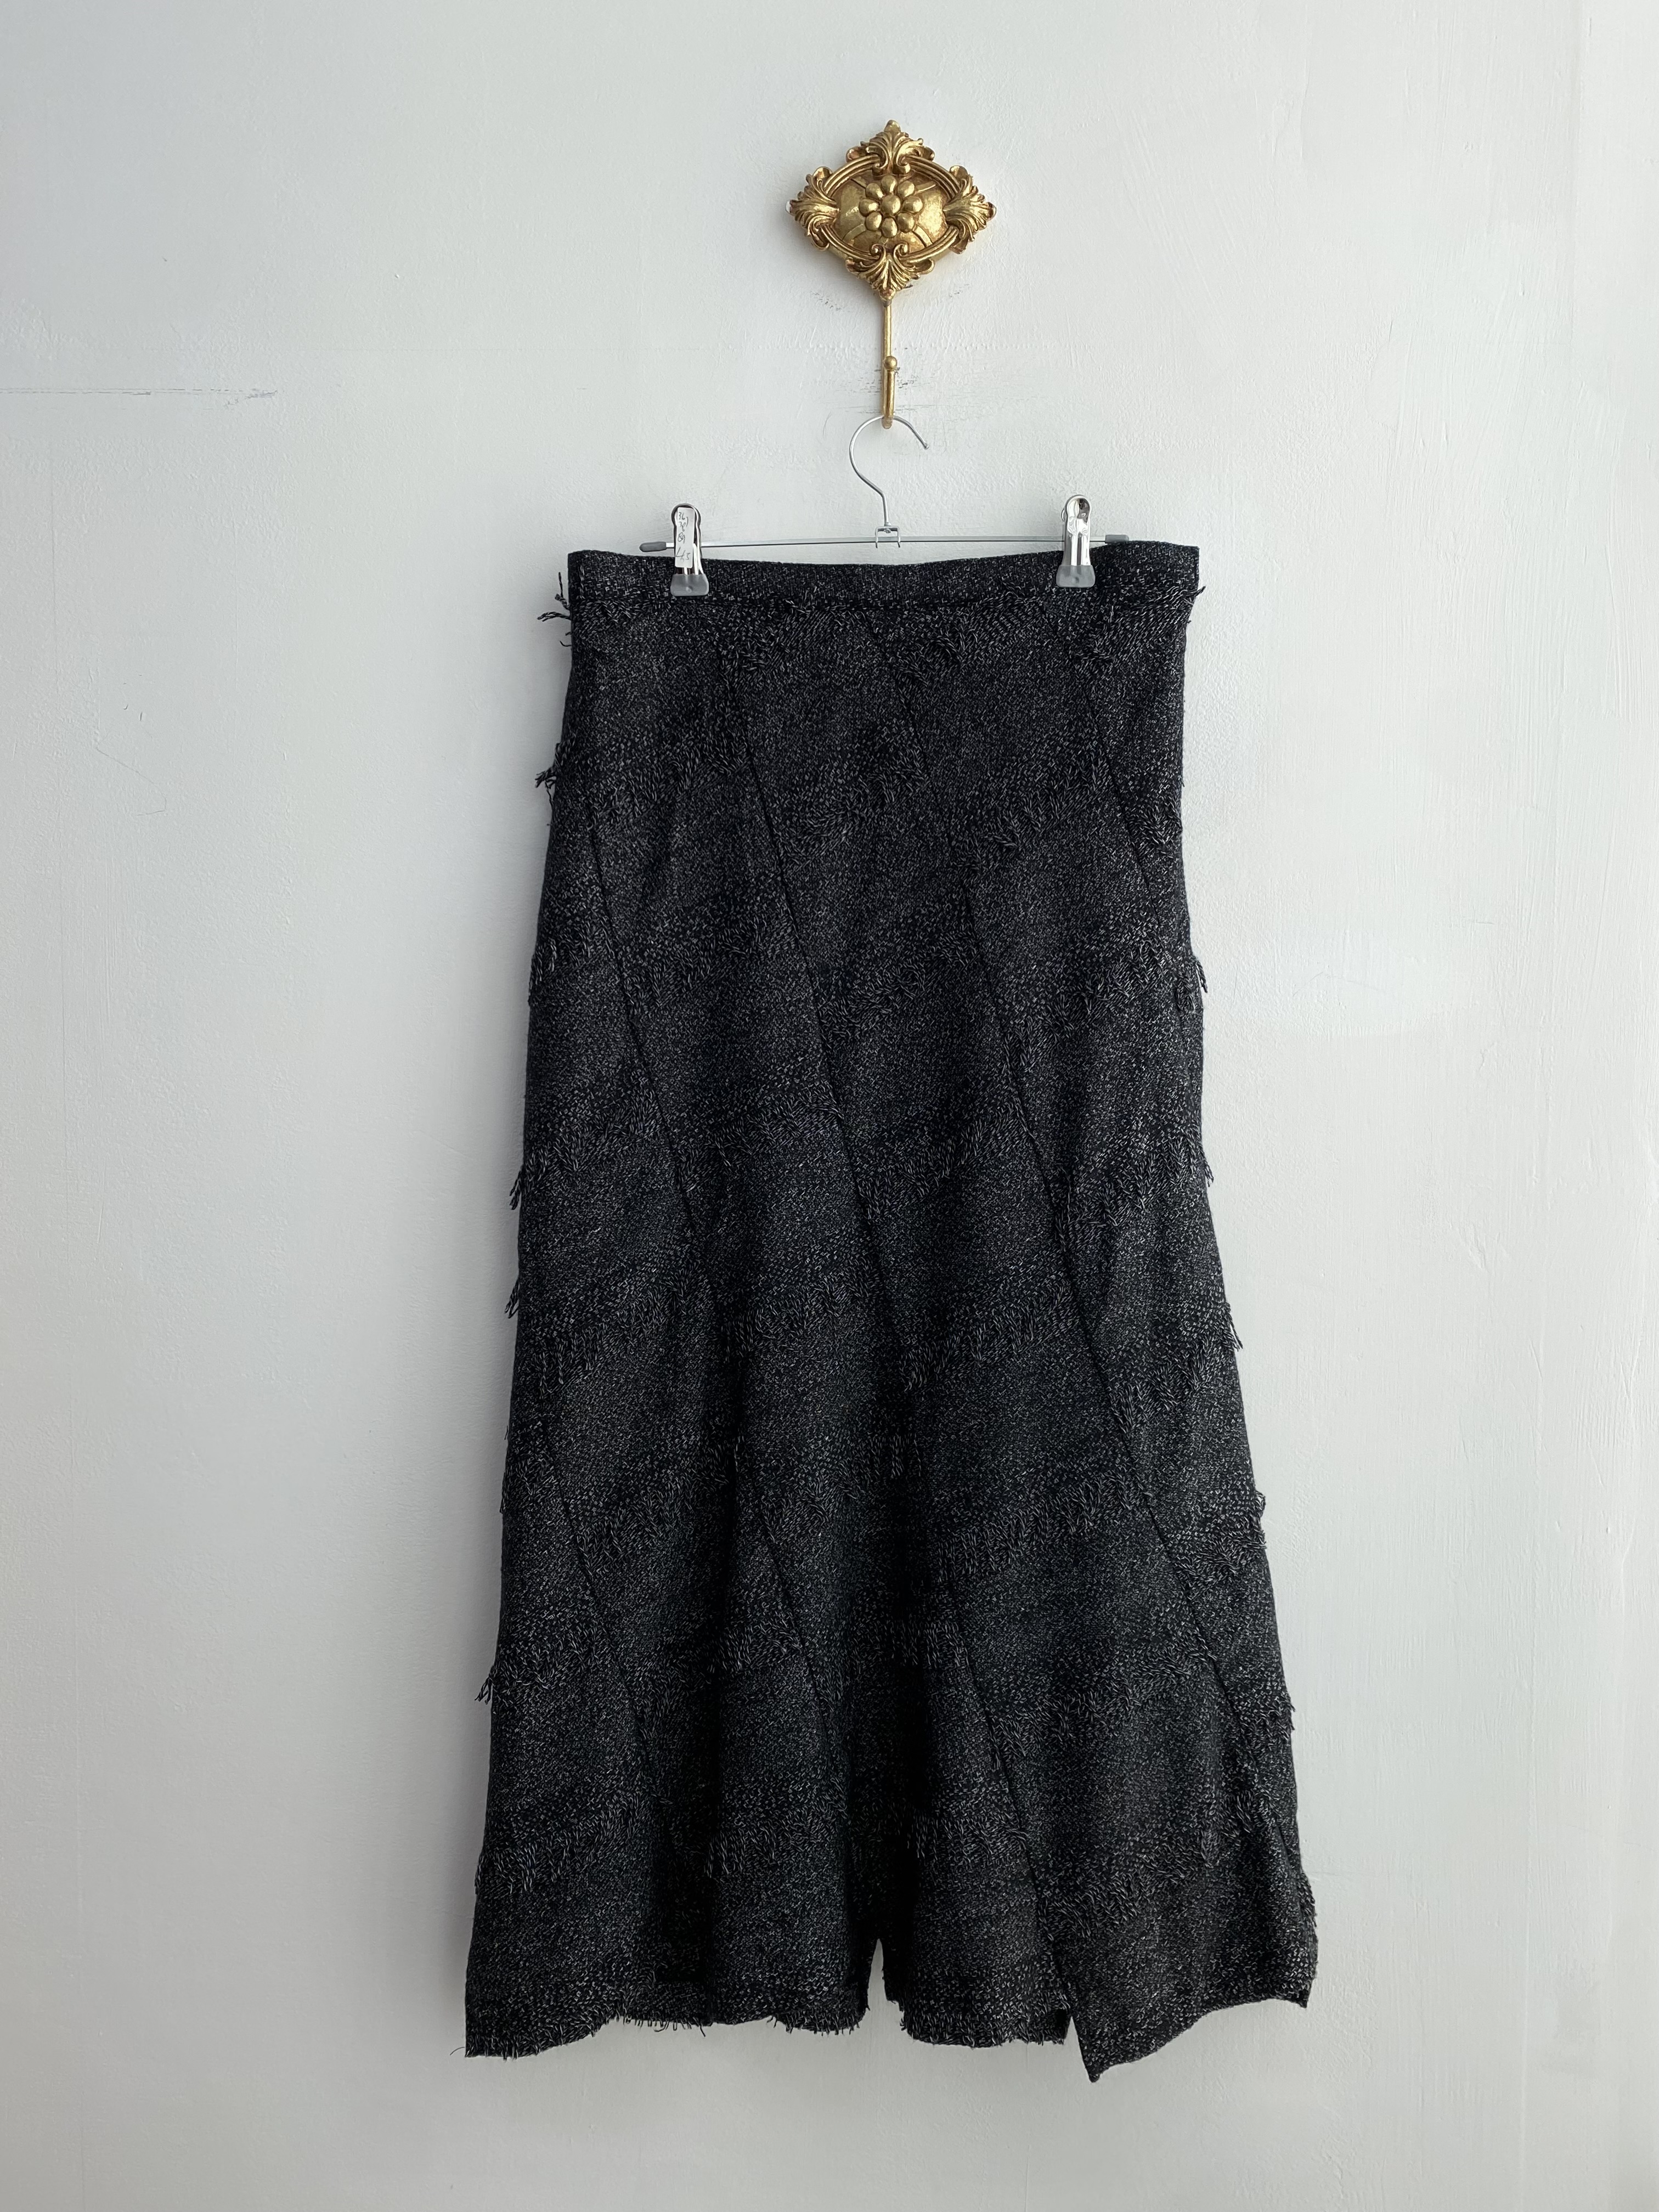 Black white mix wool grunge long skirt